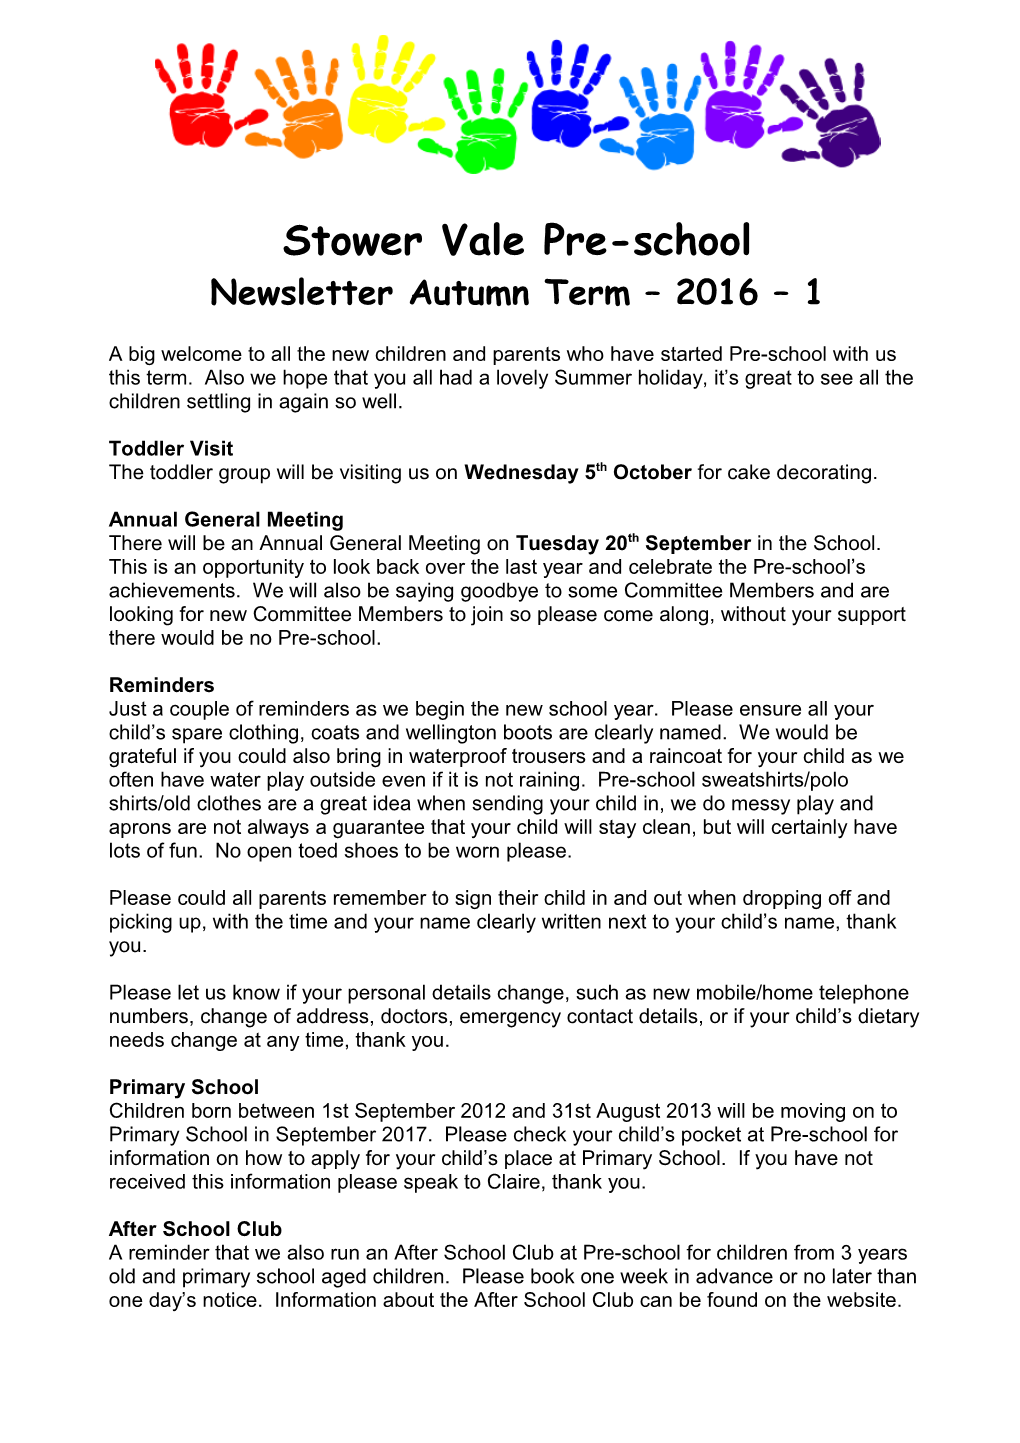 Stower Vale Pre-School